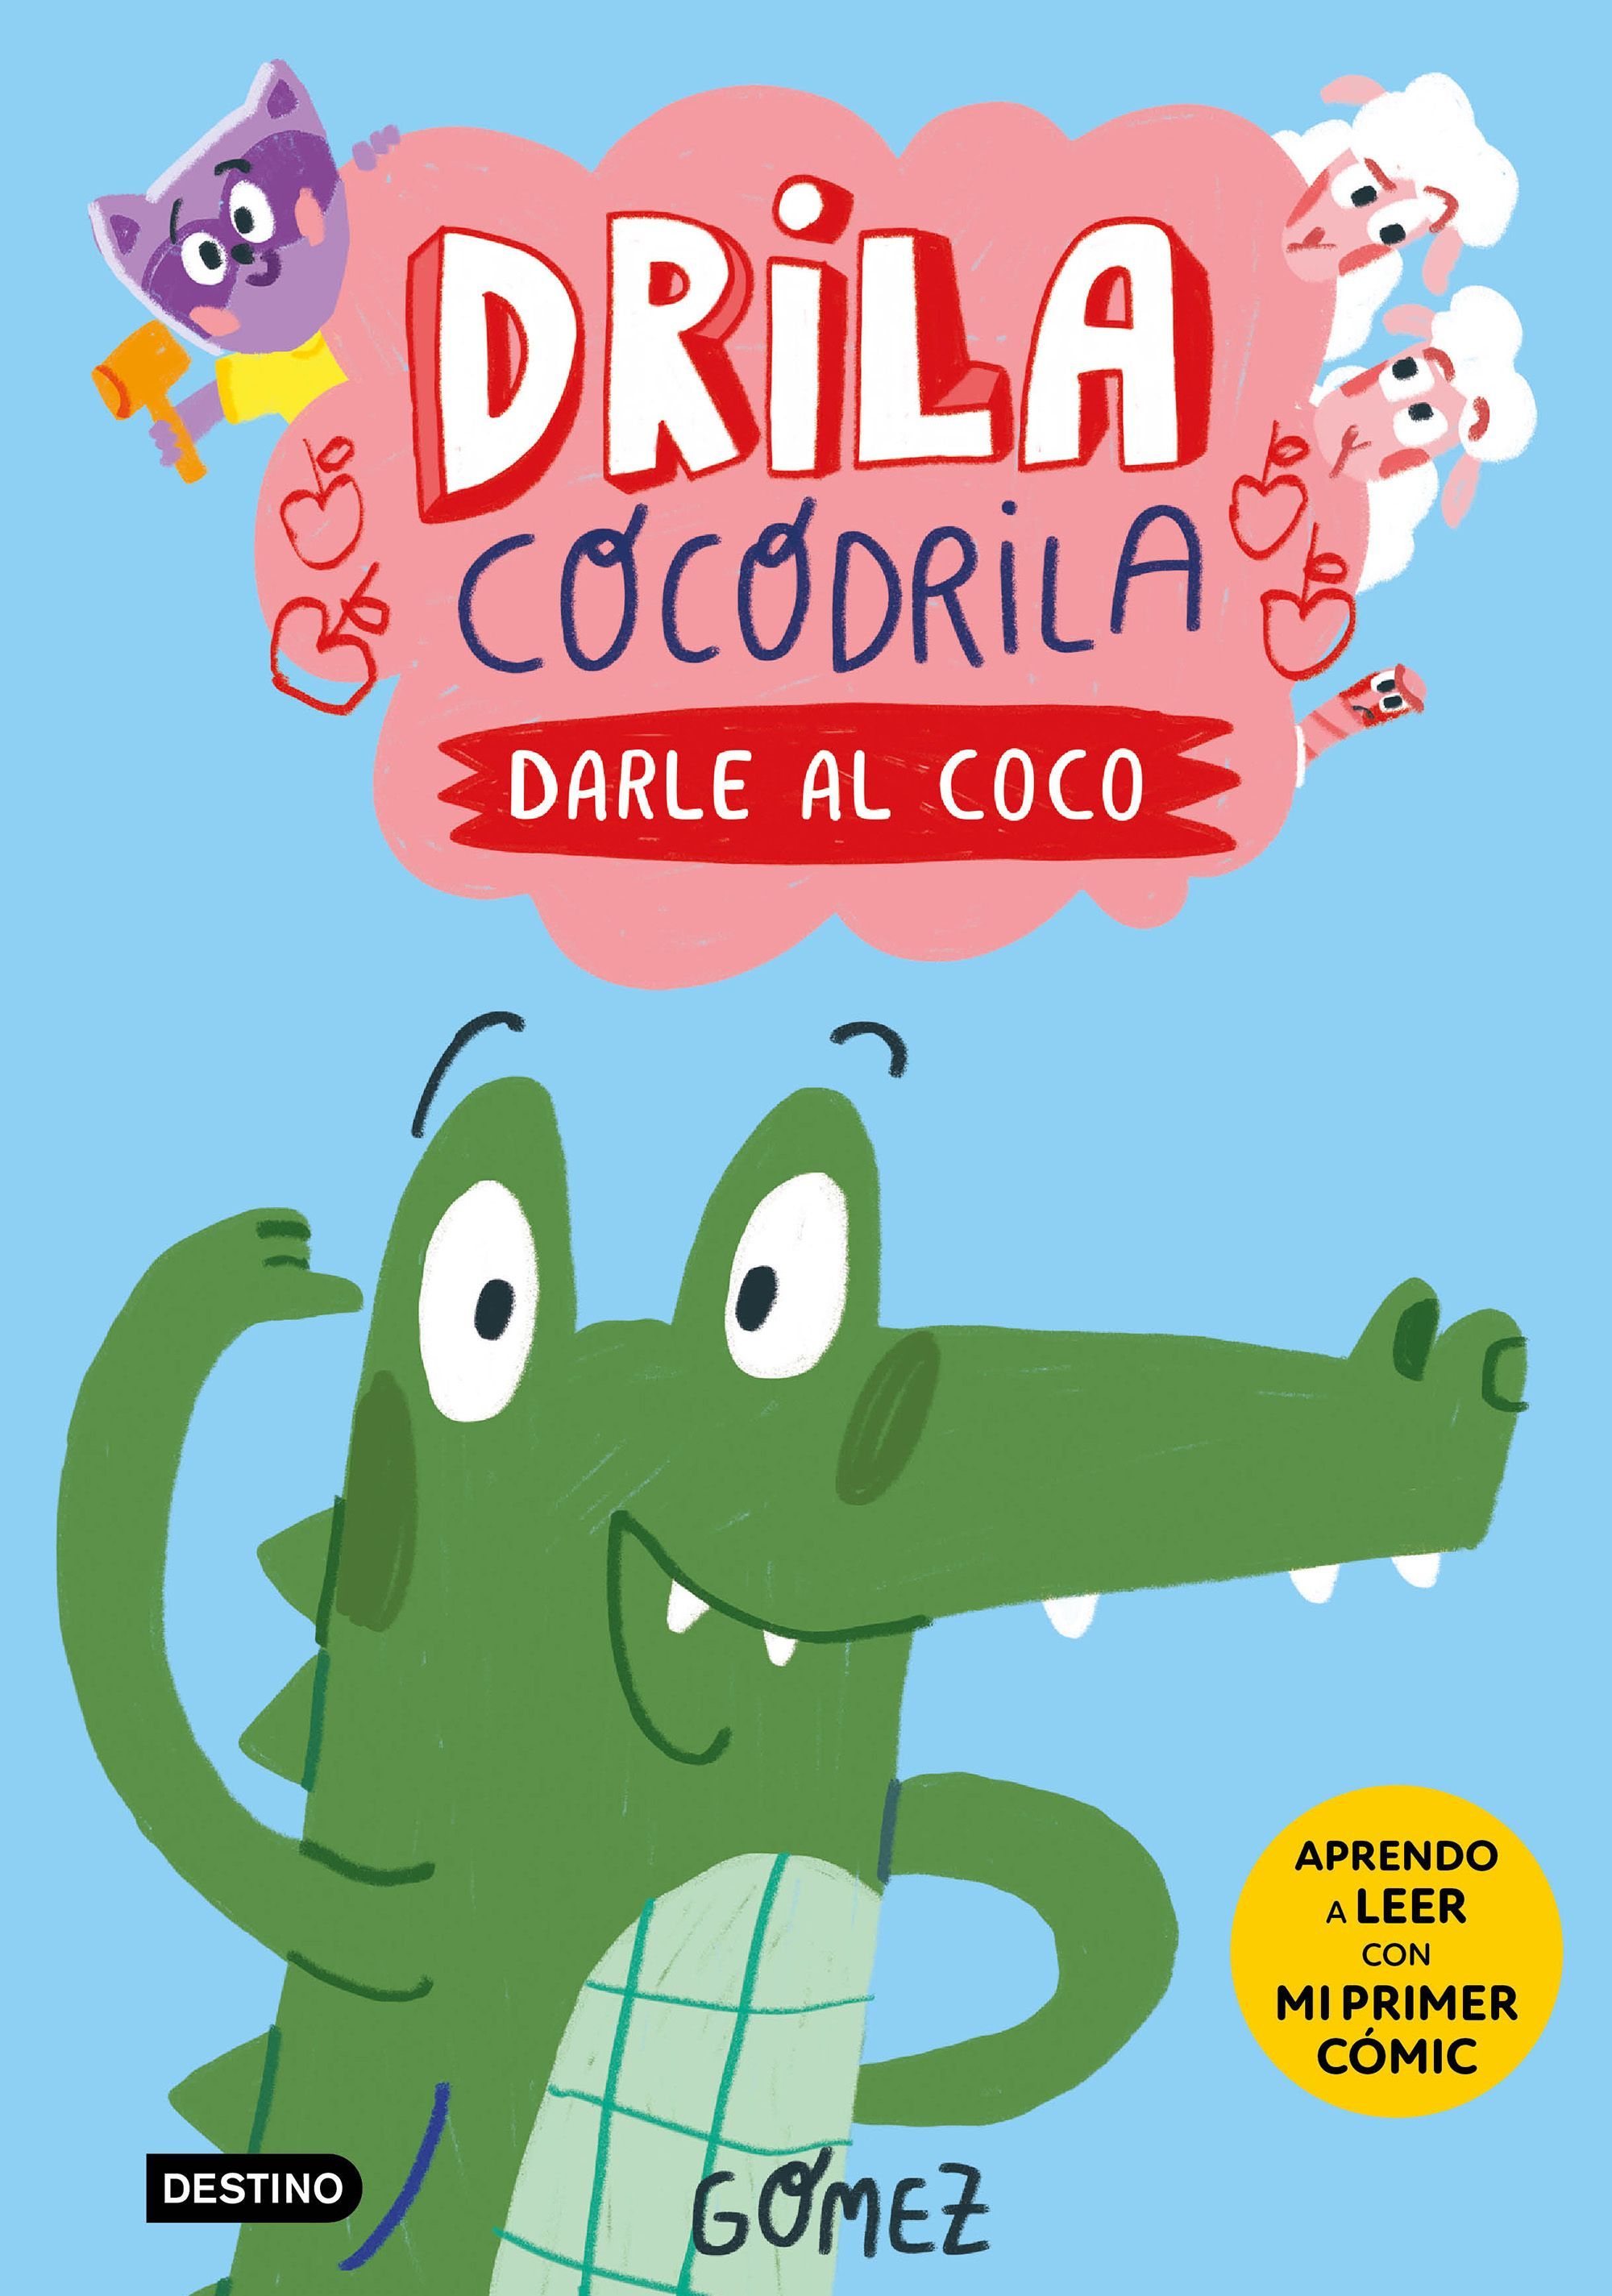 DRILA COCODRILA 1. DARLE AL COCO. 